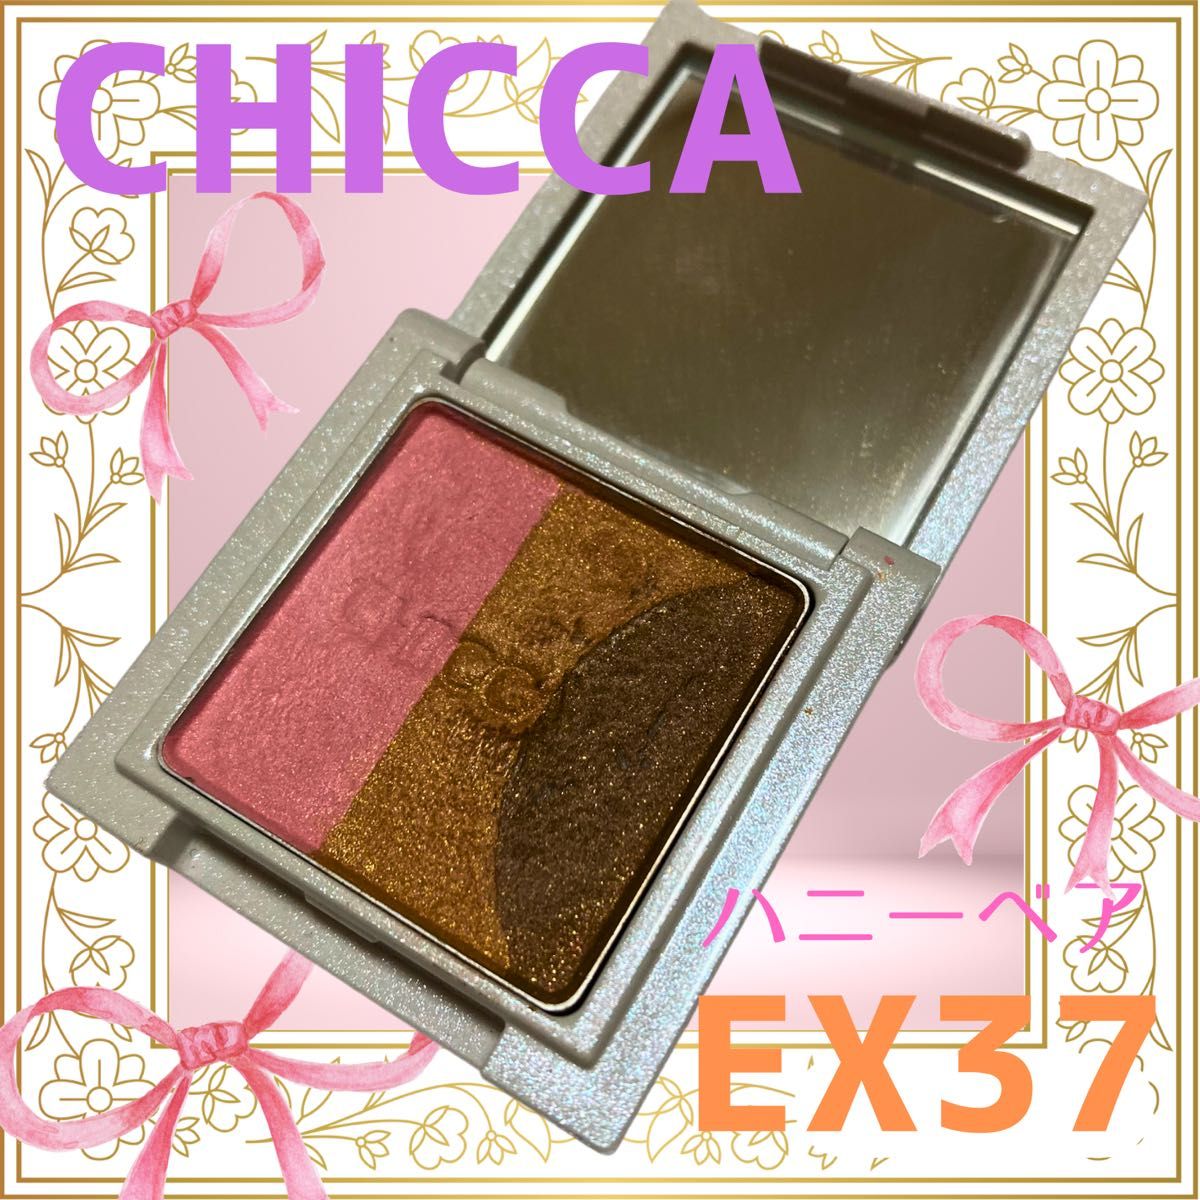 CHICCA/ミスティックパウダーアイシャドウEX37ハニーベア/カネボウ/kanebo/ピンクブラウン/限定色/アイカラー化粧品